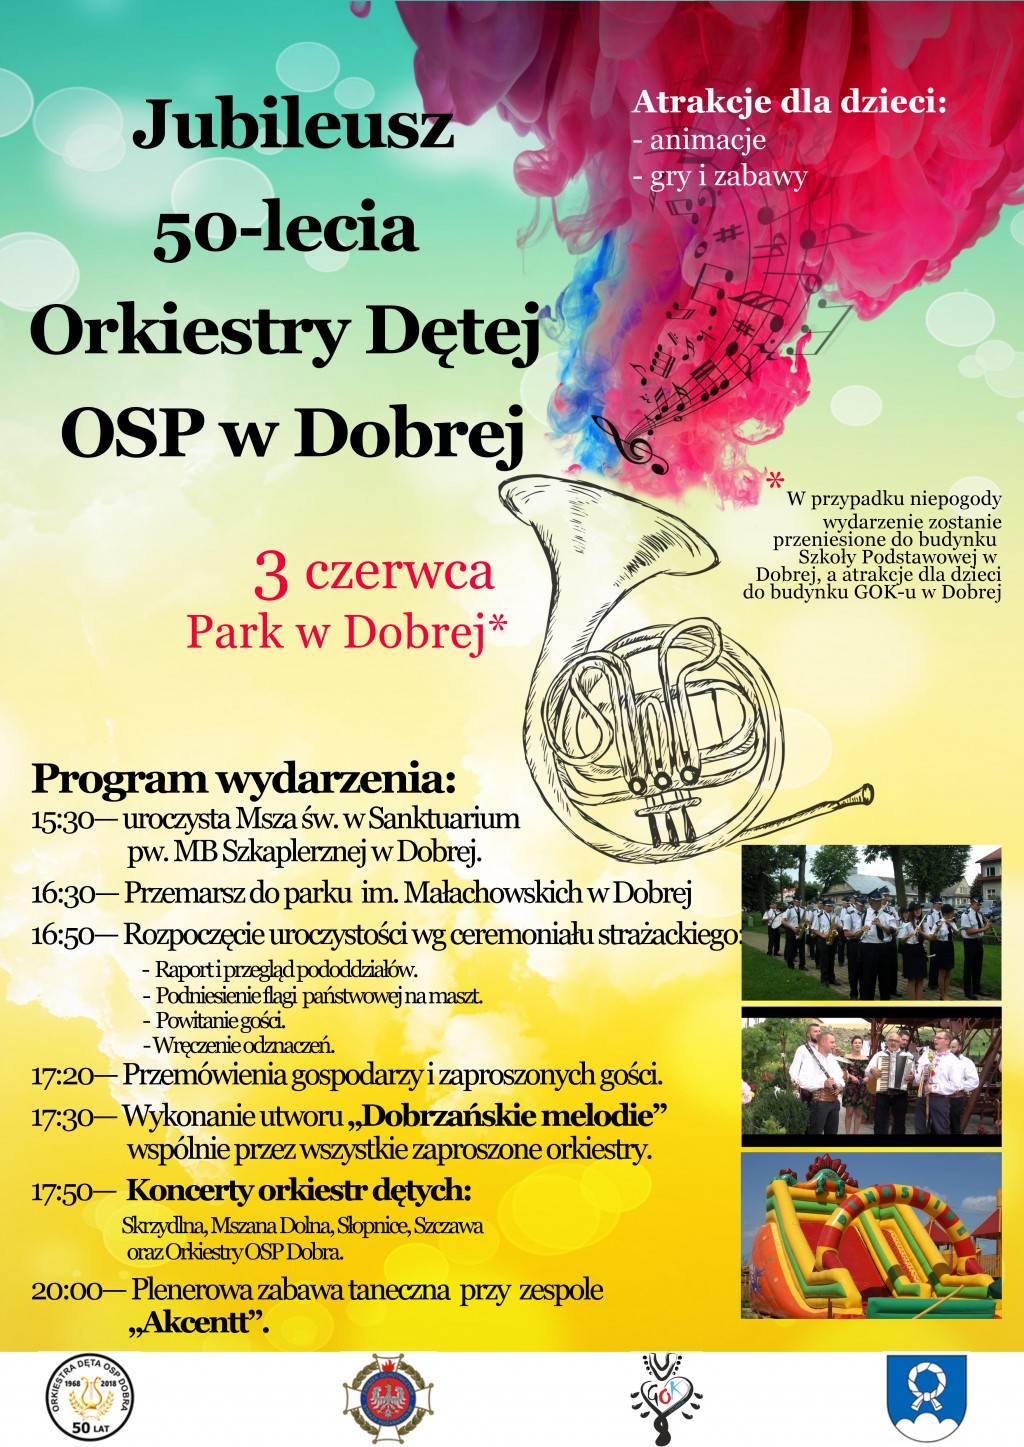 Jubileusz 50-lecia Orkiestry Dętej OSP w Dobrej - 3 czerwca 2018 r.